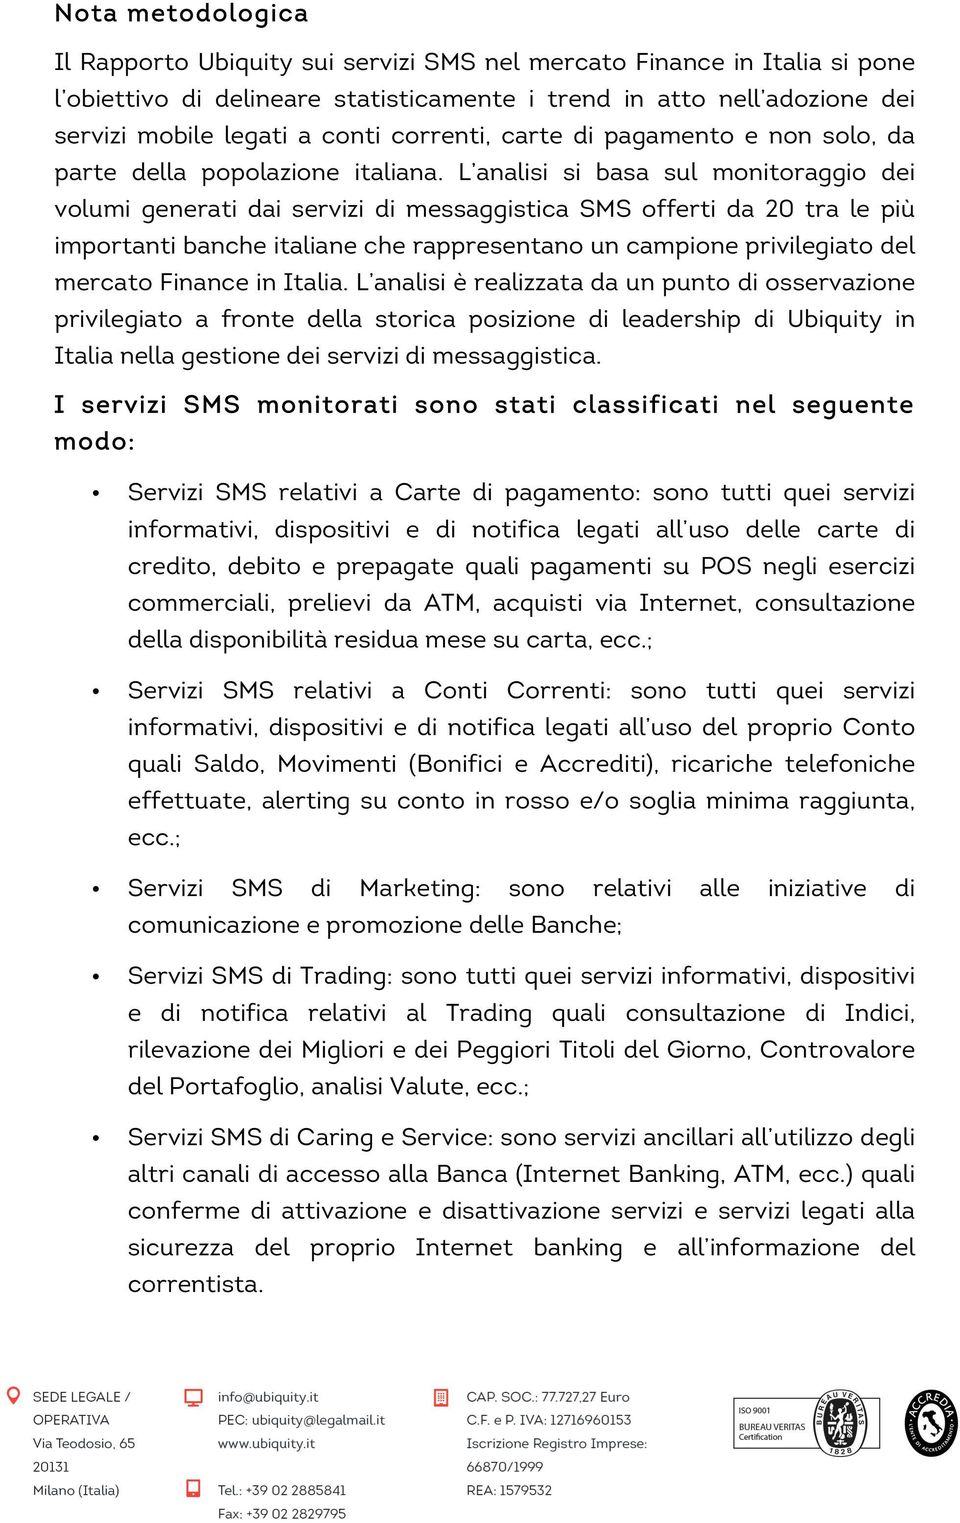 L analisi si basa sul monitoraggio dei volumi generati dai servizi di messaggistica SMS offerti da 20 tra le più importanti banche italiane che rappresentano un campione privilegiato del mercato